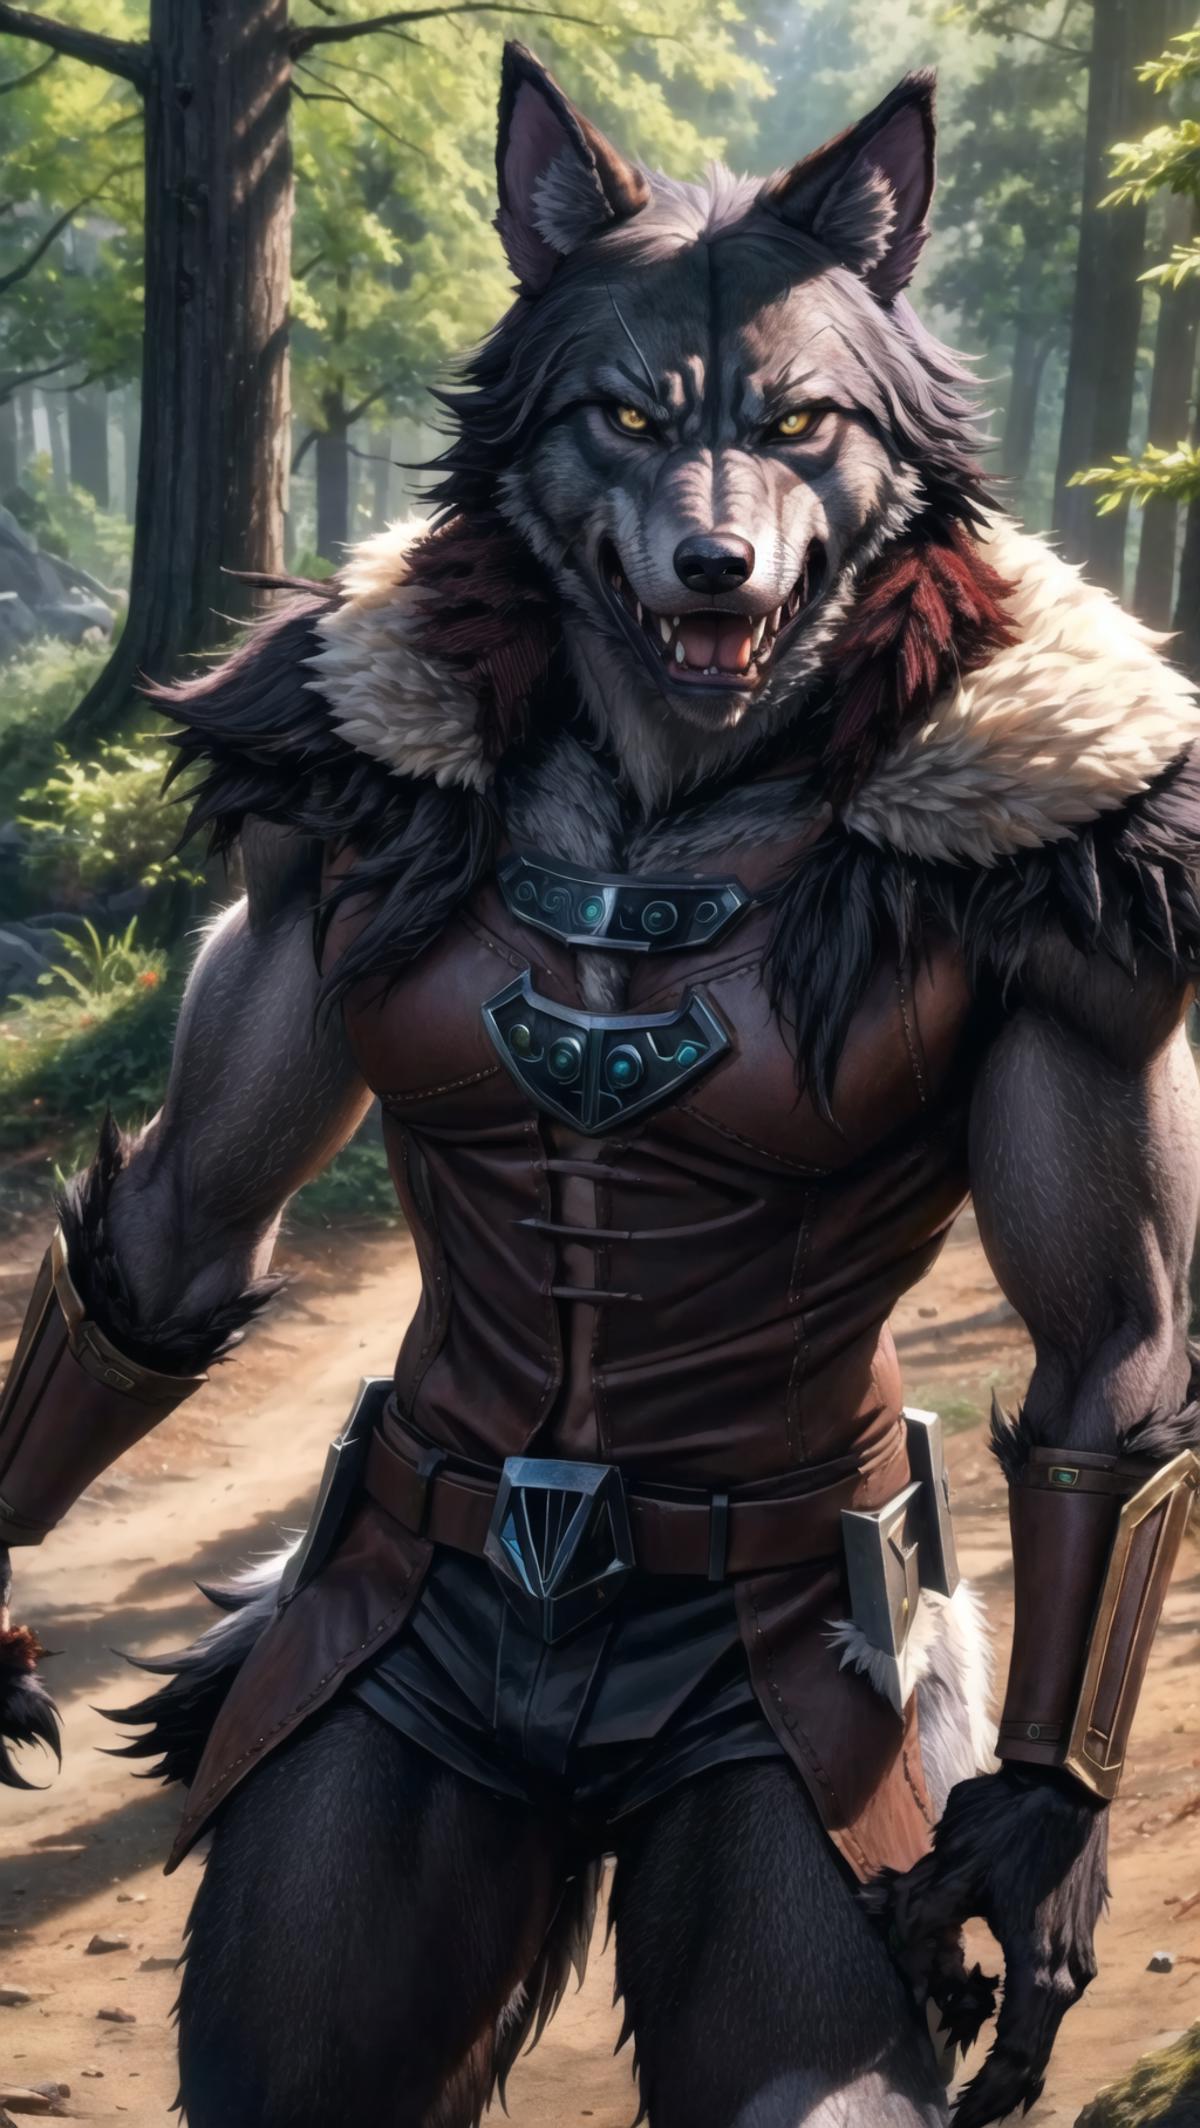 Werewolf image by HC94